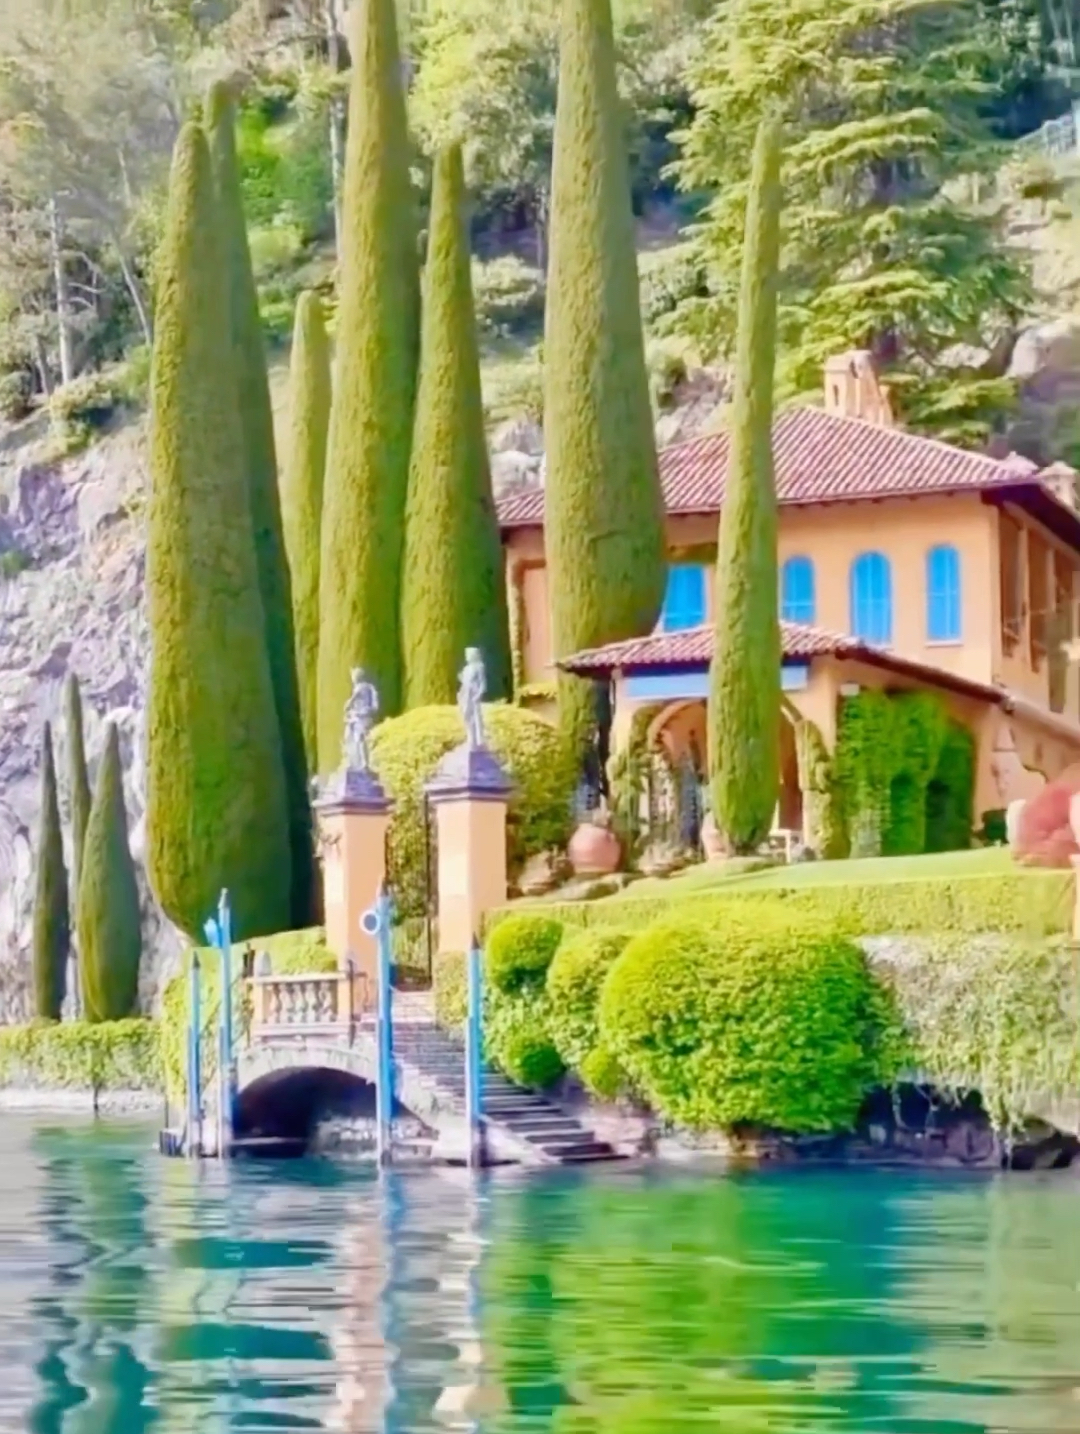 意大利科莫湖  简直就是梦想中的度假天堂